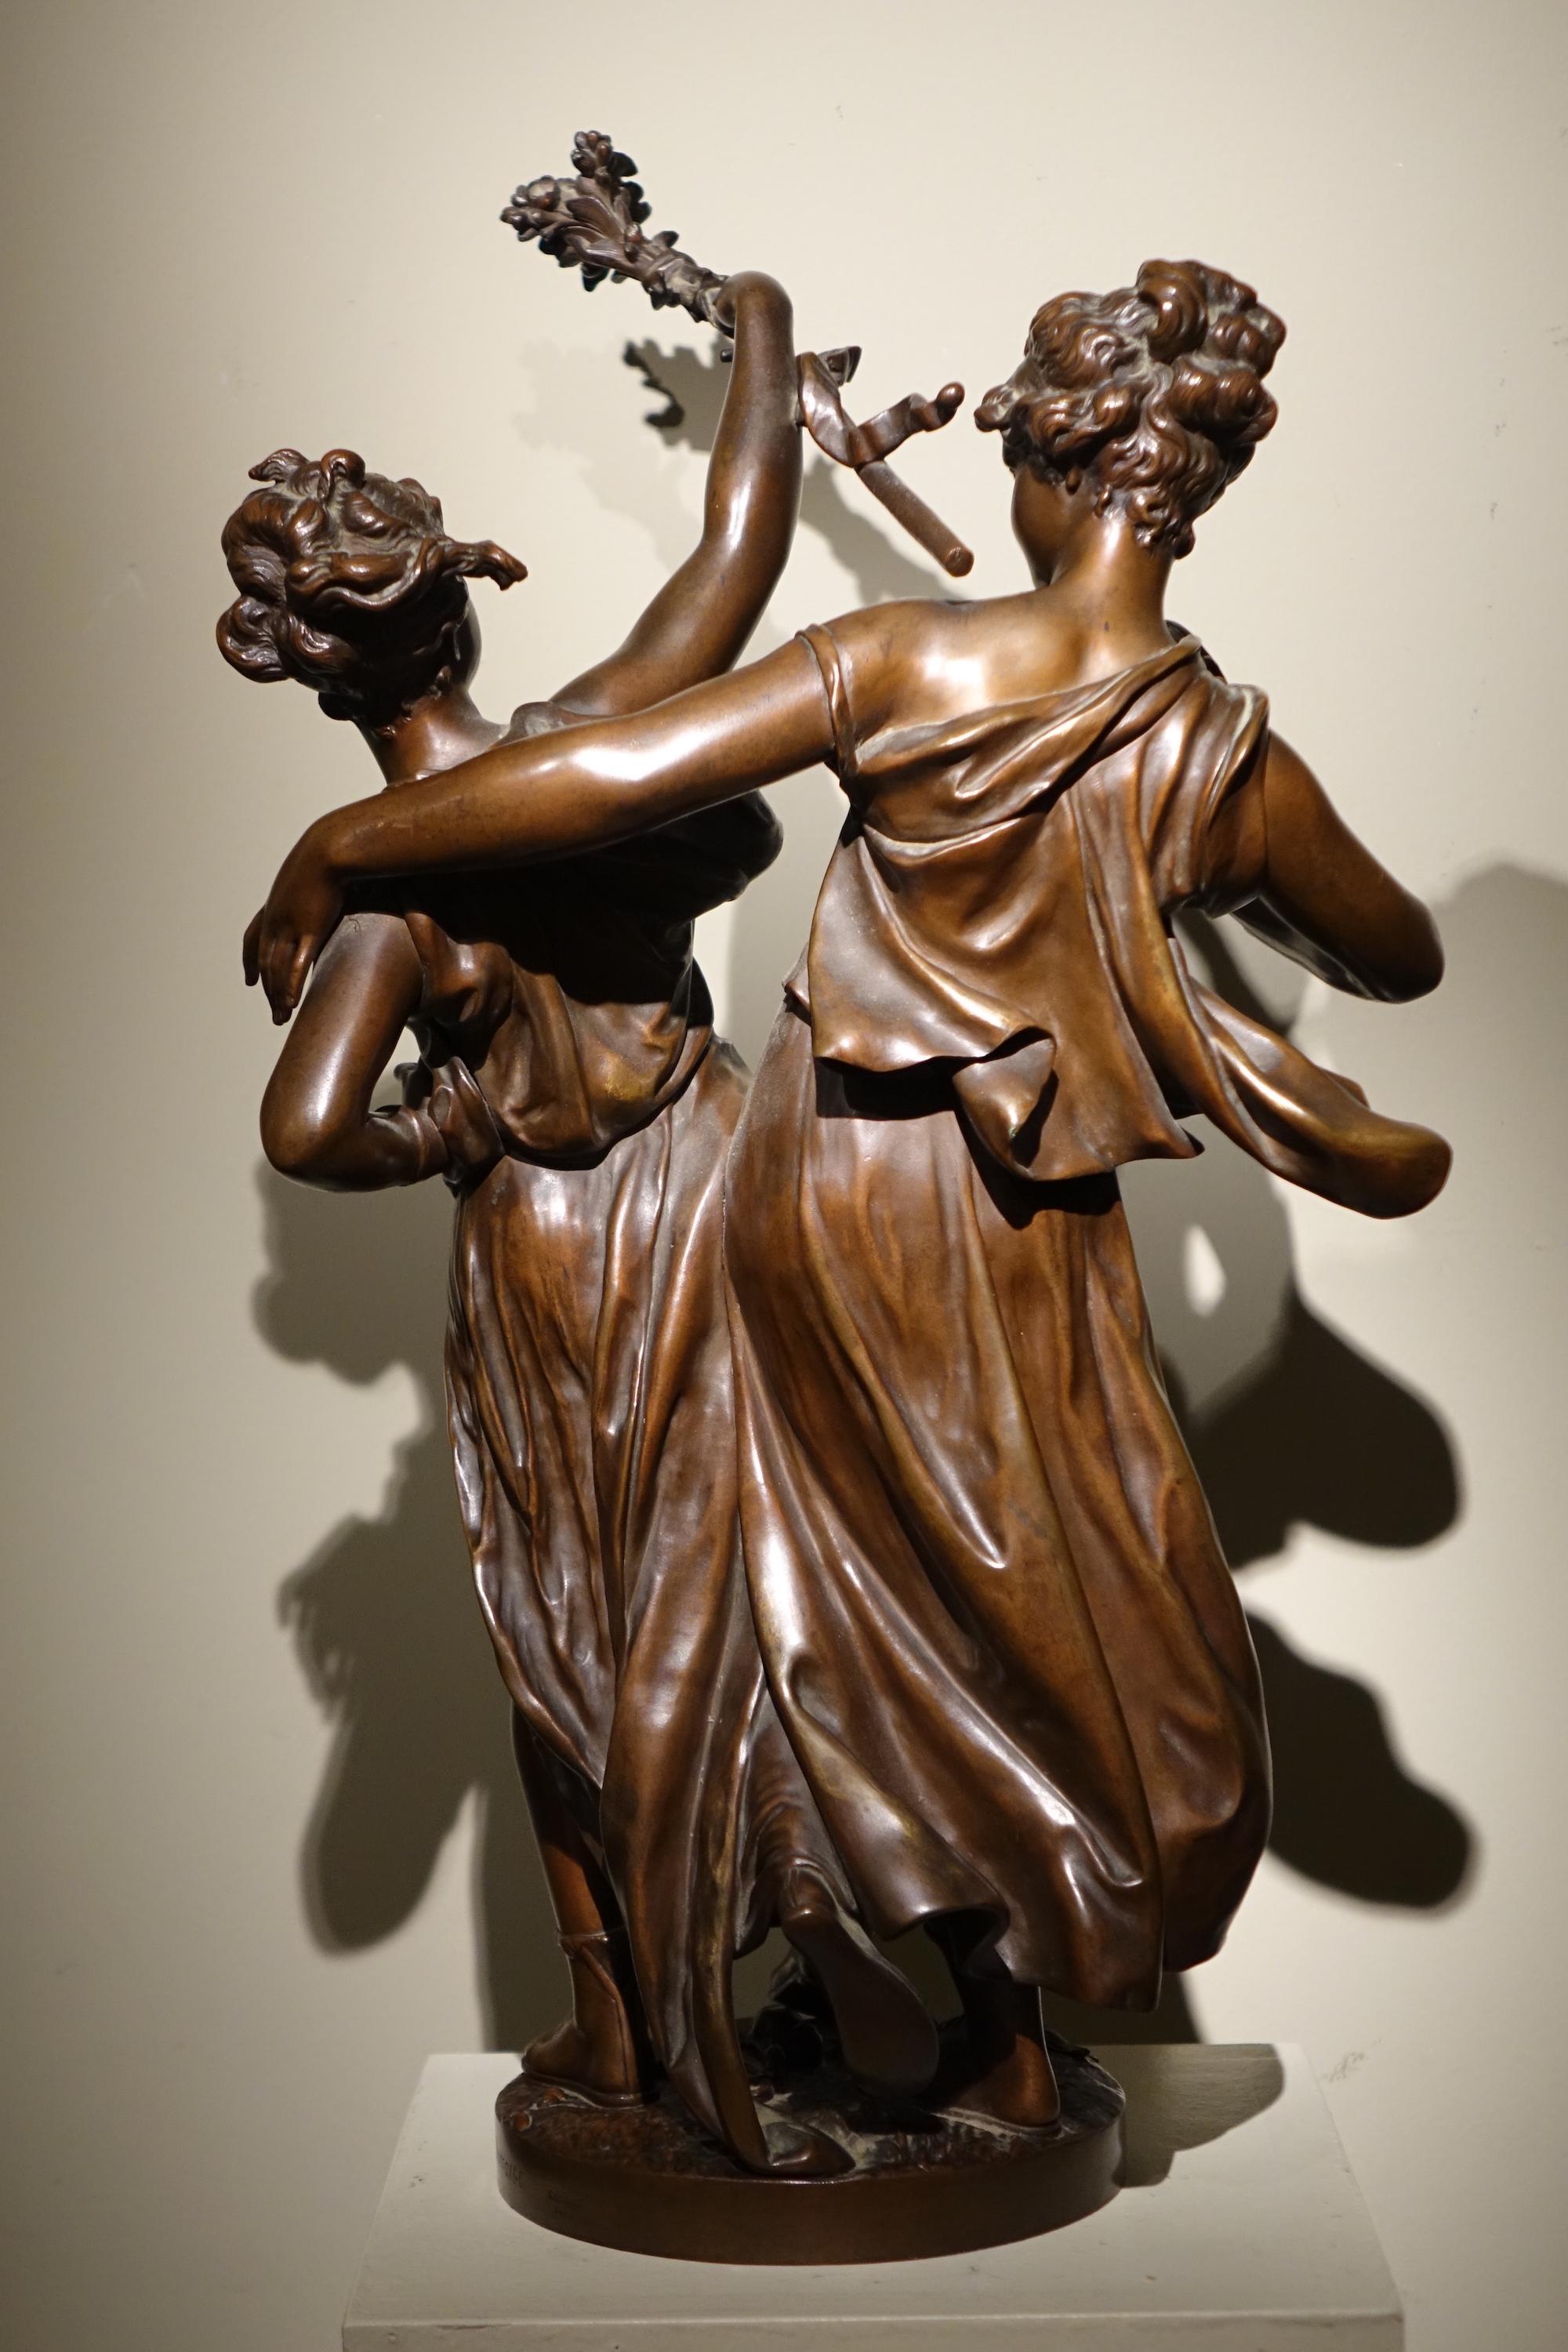 Bacchanale, ou deux jeunes filles dansant et jouant du tambourin, l'une portant une baguette décorée de fleurs.
Bronze à patine brune signé DUMAIGE
Henry Etienne Dumaige (1830-1888) est un sculpteur français. Il a été l'élève de Jean Feuchère et de